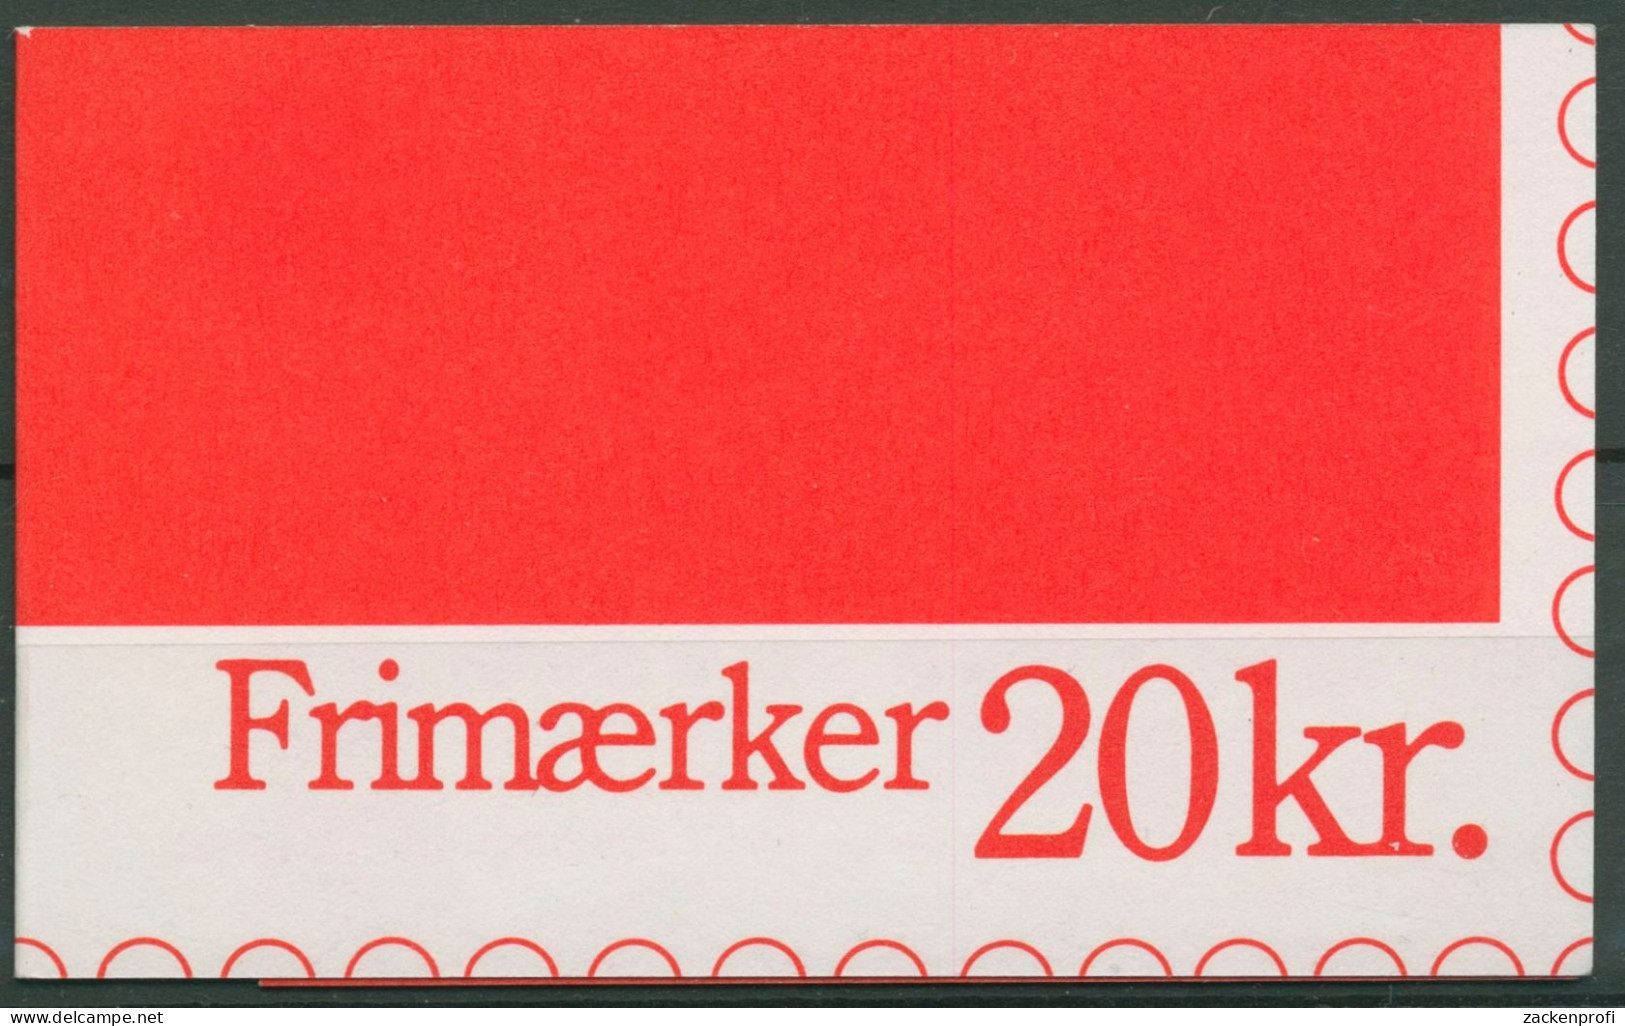 Dänemark 1990 Wellenlinien Königin Markenheftchen MH 42 Postfrisch (C60844) - Postzegelboekjes